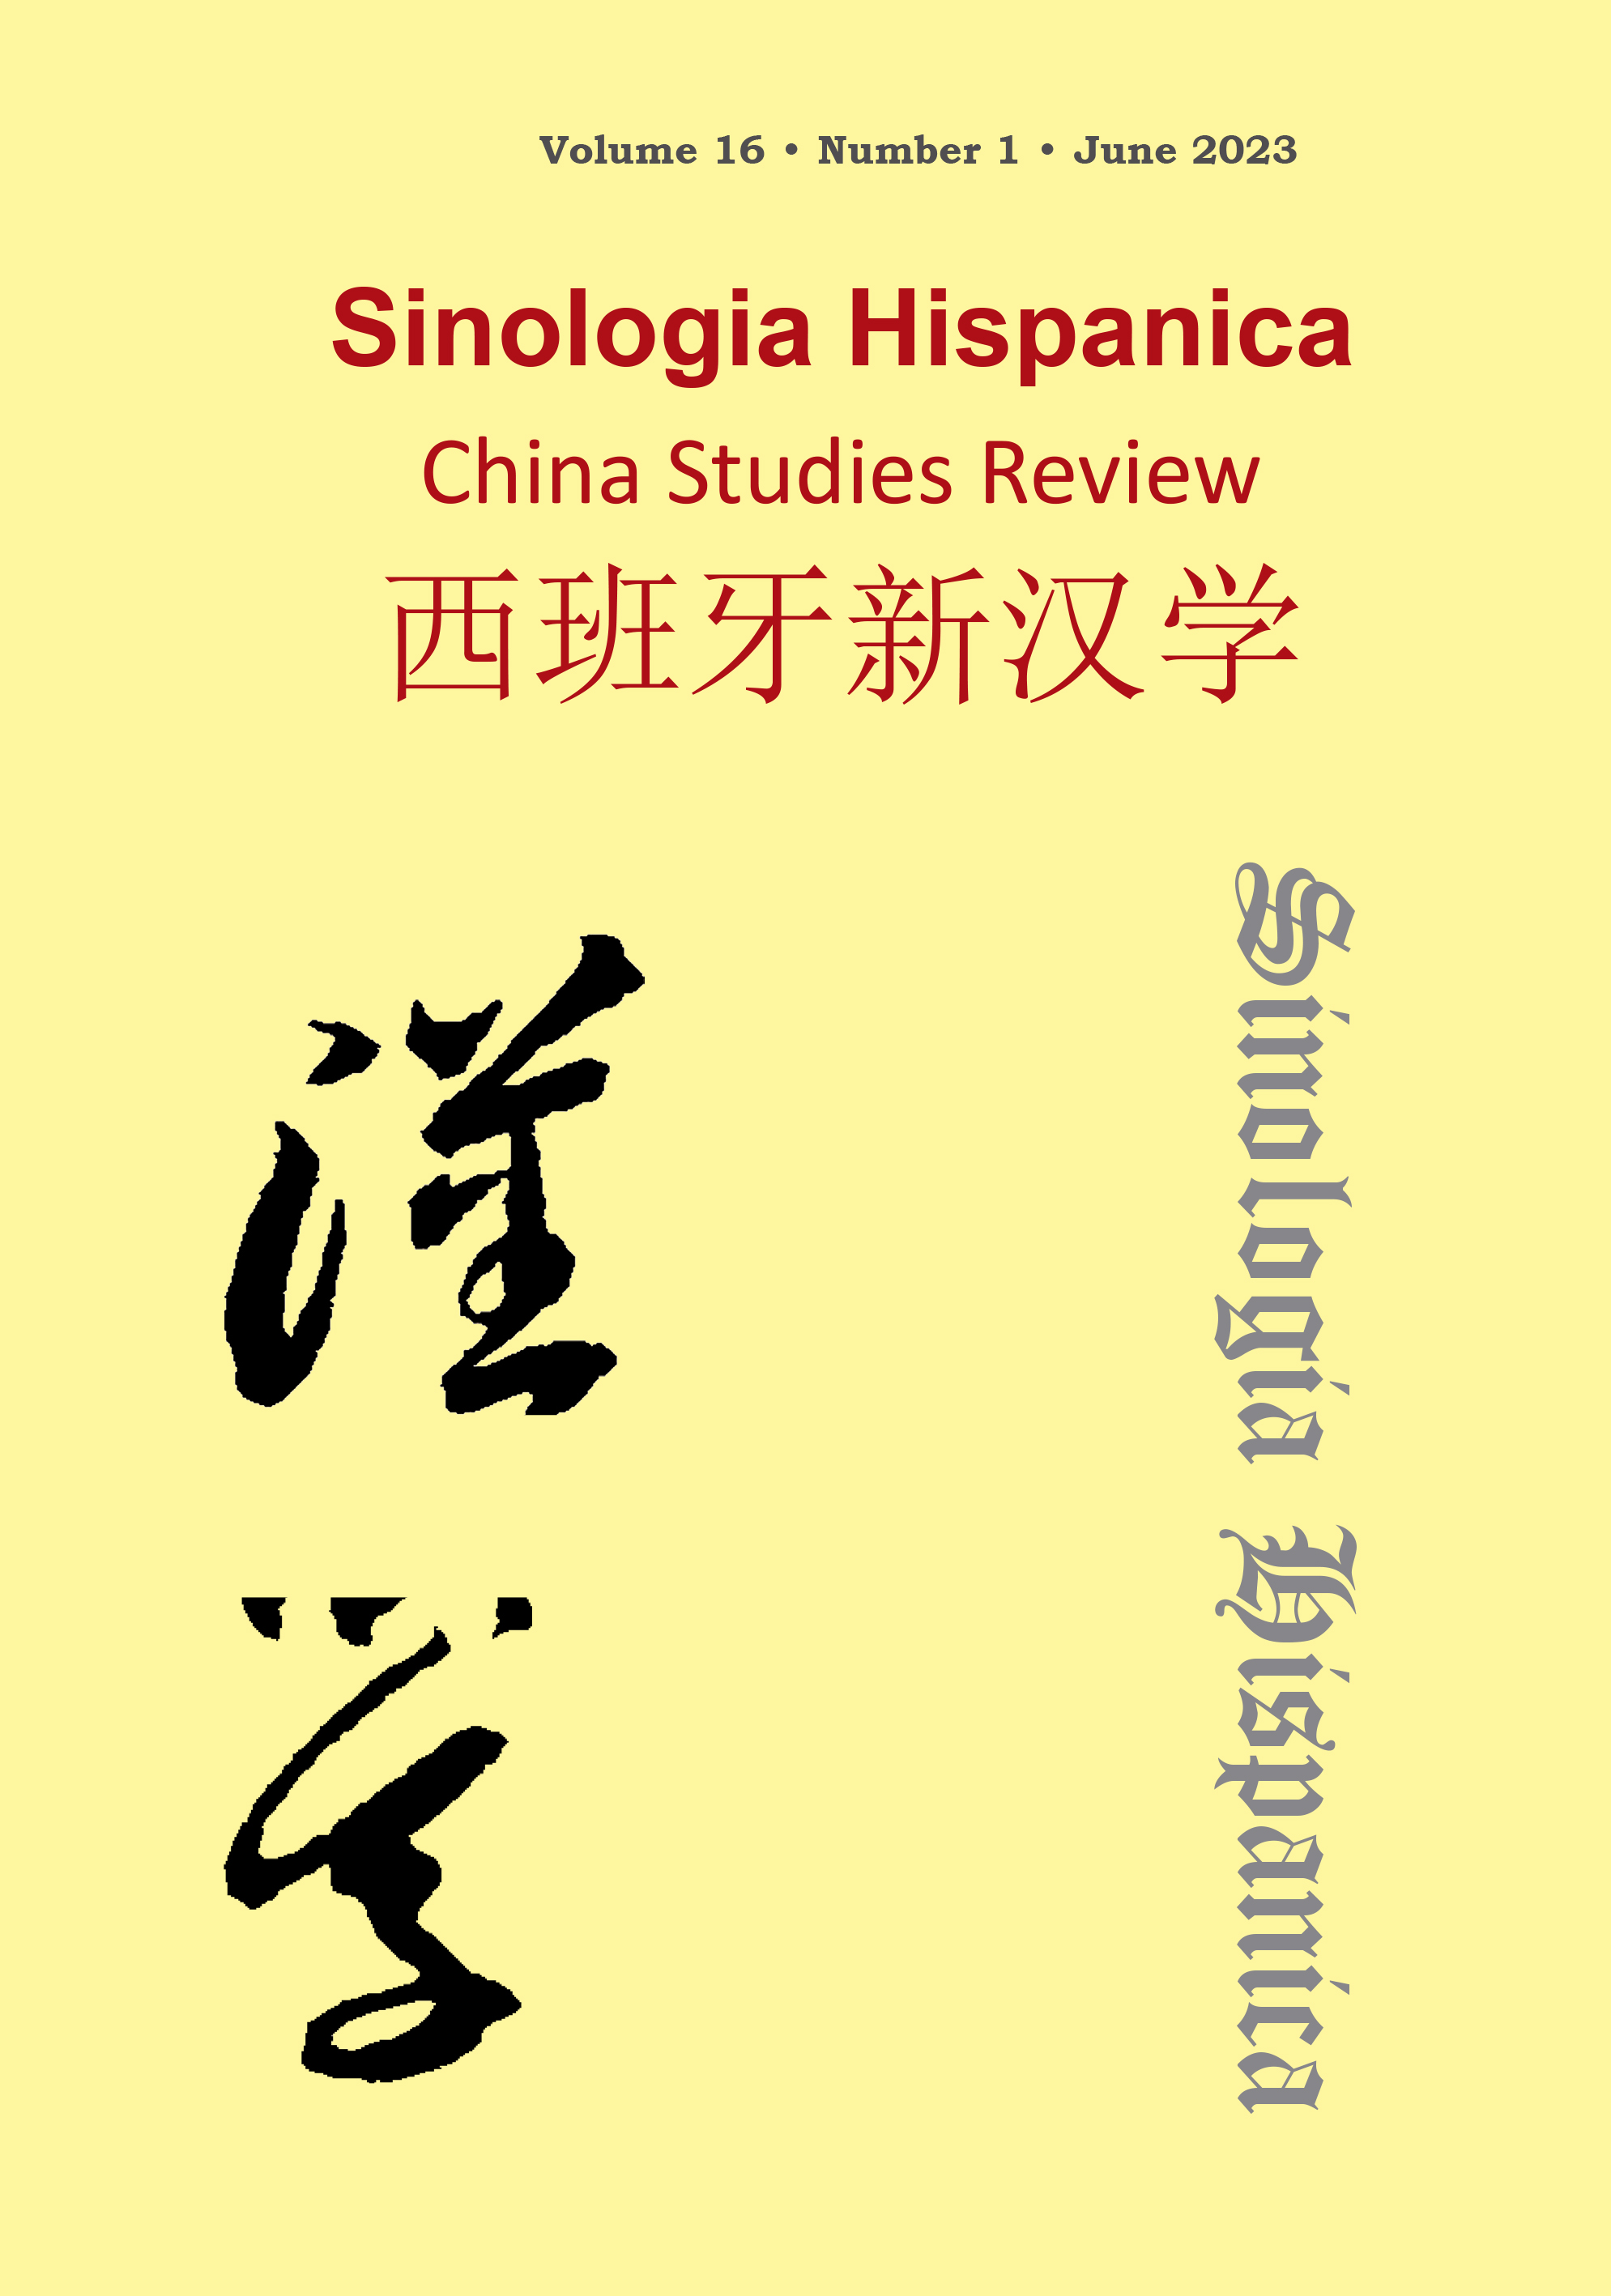 					View Vol. 16 No. 1 (2023): Sinología Hispanica China Studies Review. Volume 1, Nº 16, June 2023
				